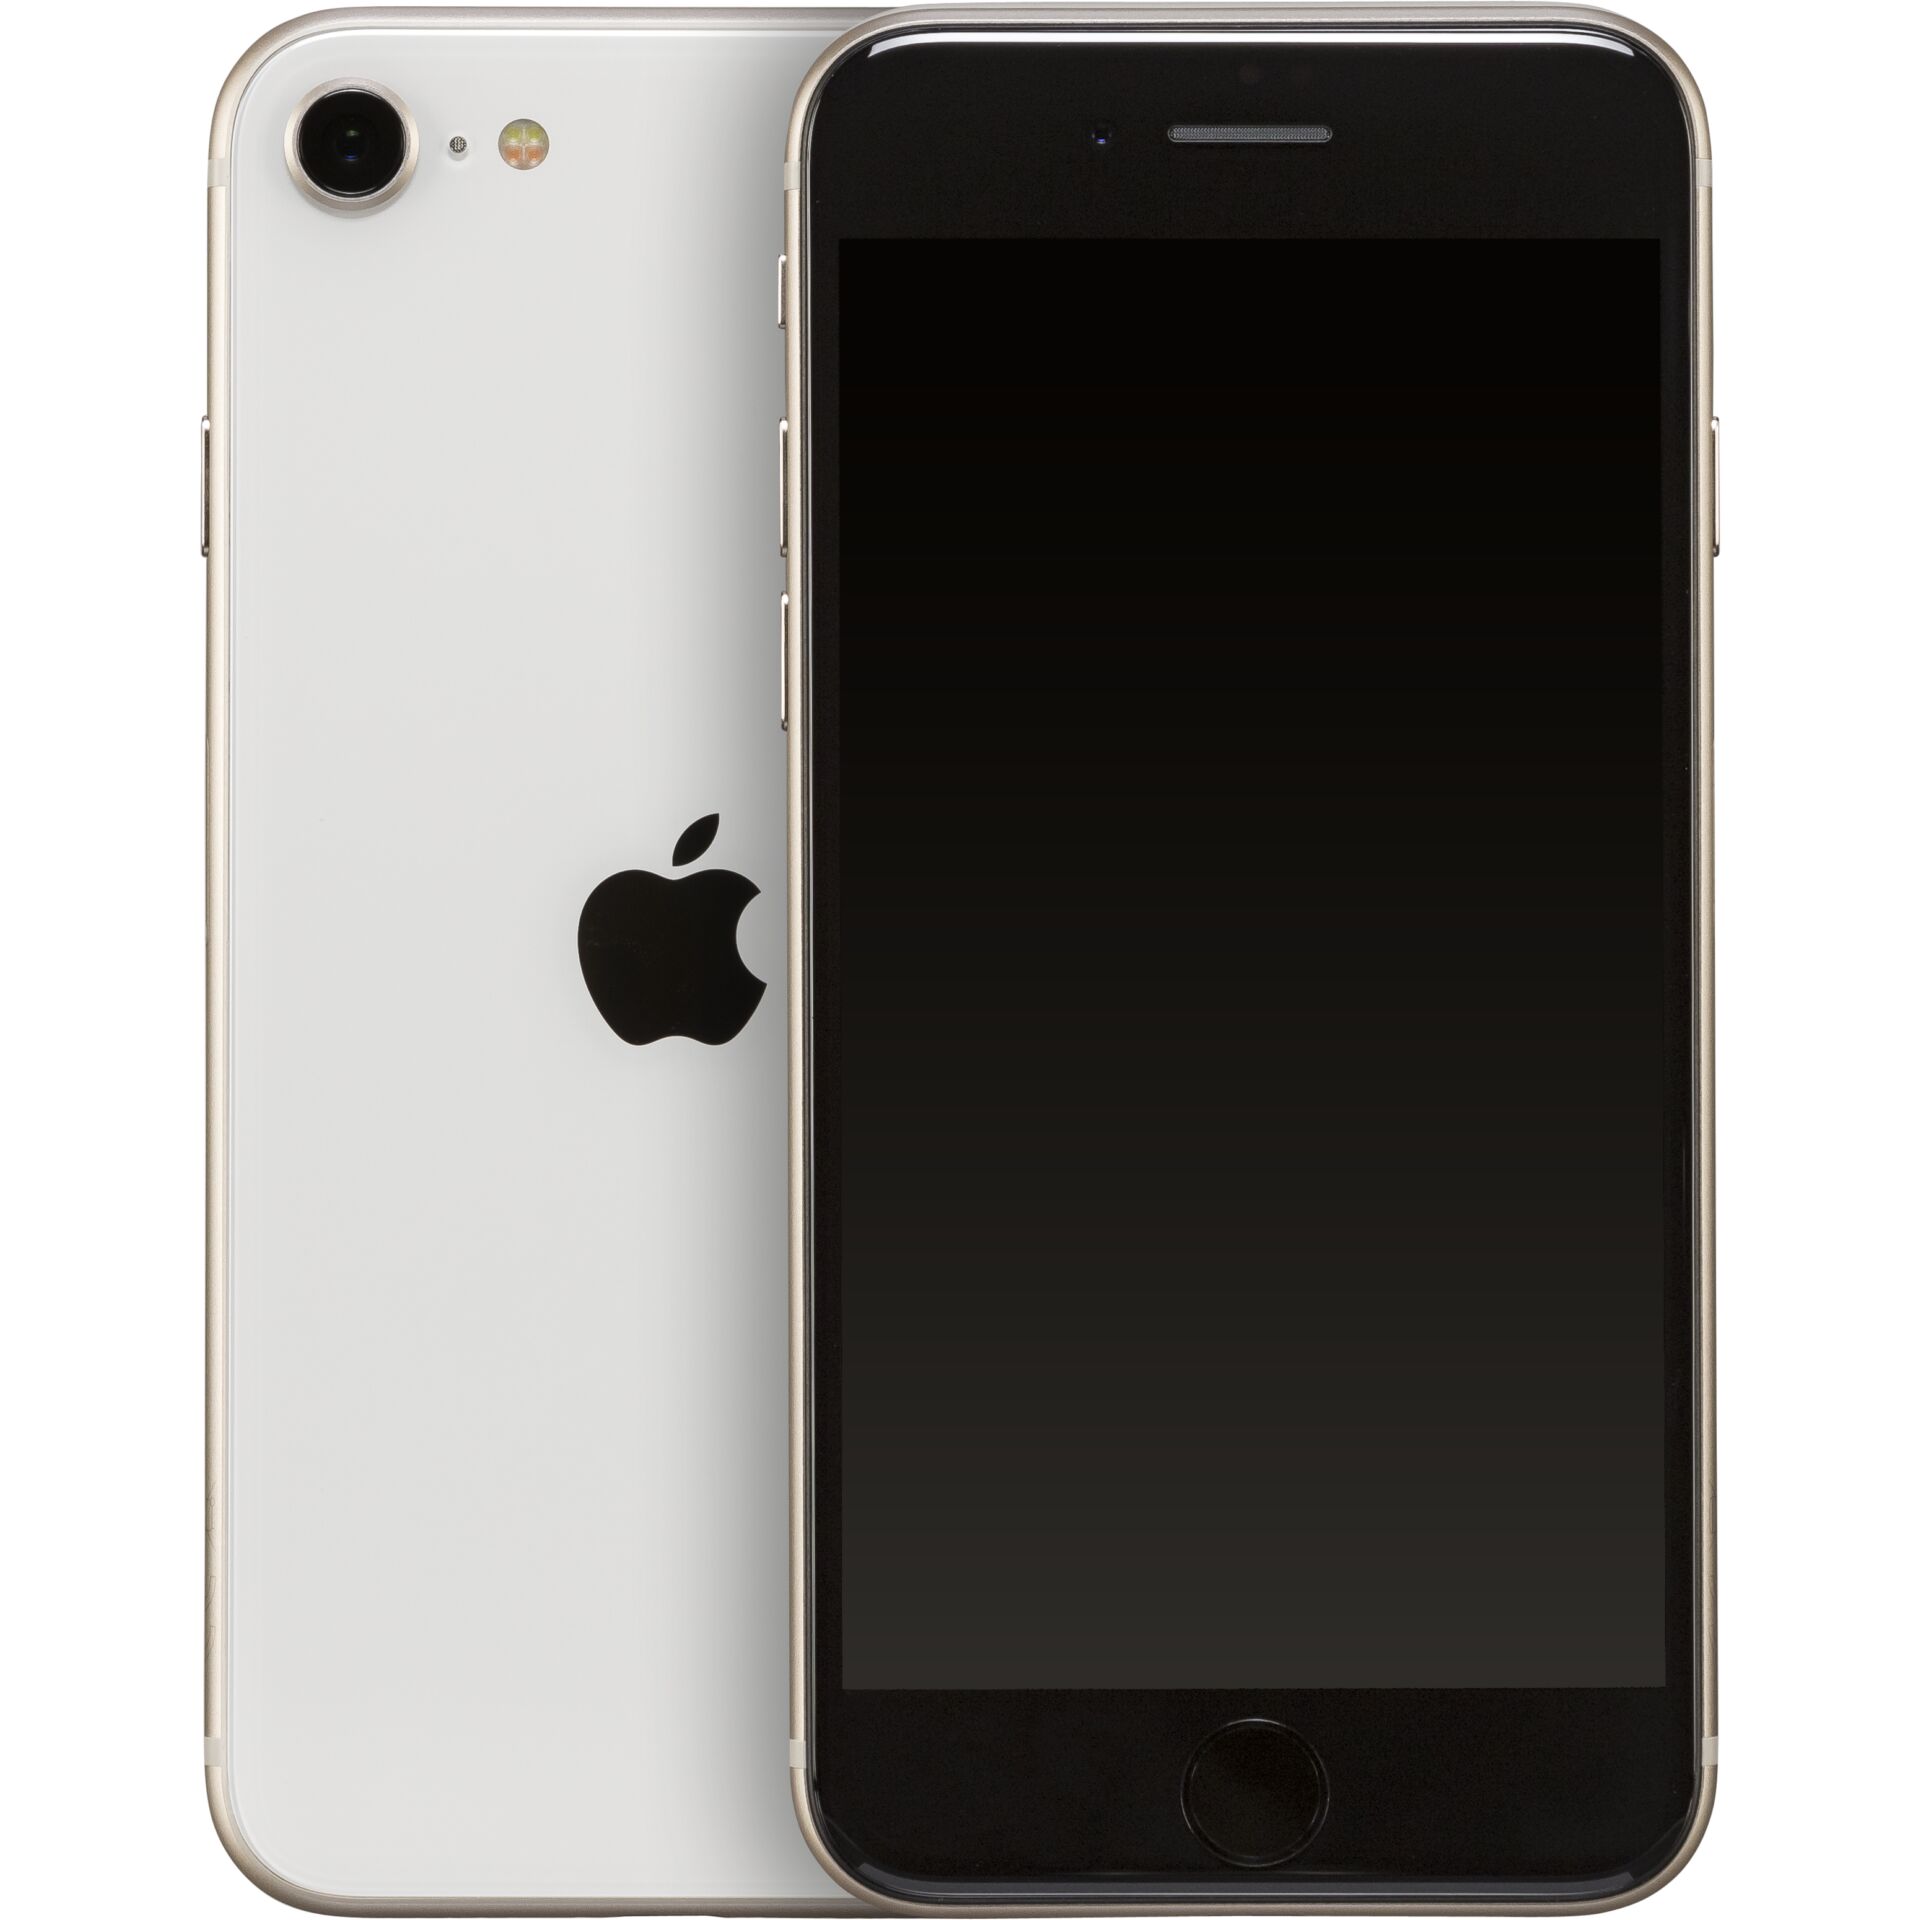 Apple iPhone SE 11,9 cm (4.7) Dual-SIM iOS 15 5G 64 GB Weiß